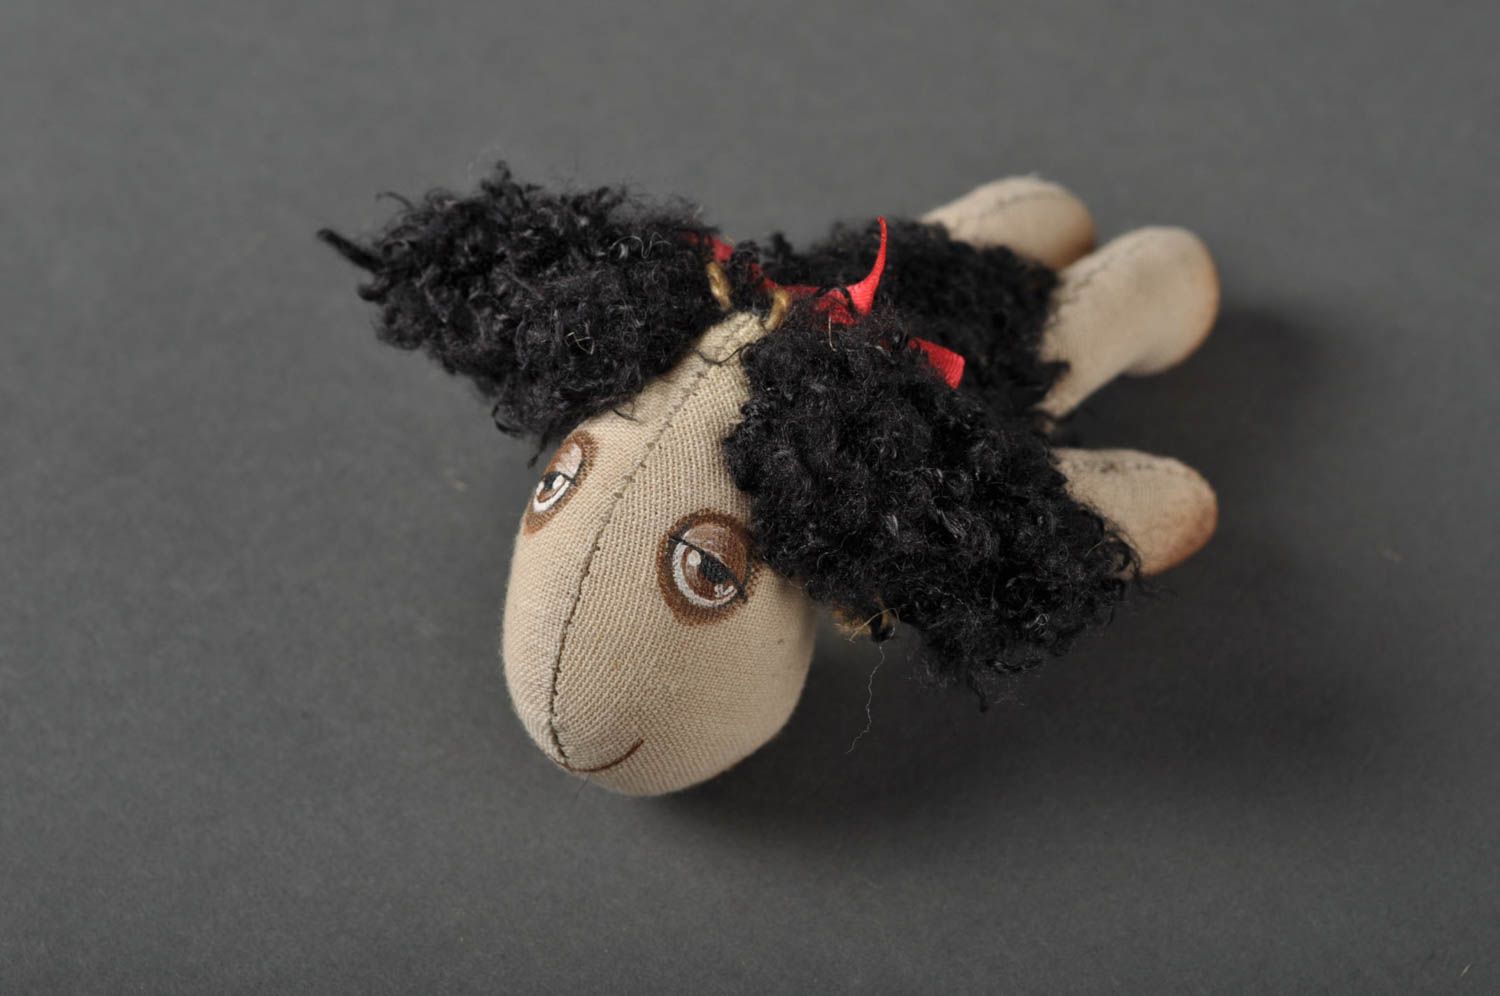 Игрушка овечка ручной работы детская игрушка расписанная акрилом мягкая игрушка фото 1